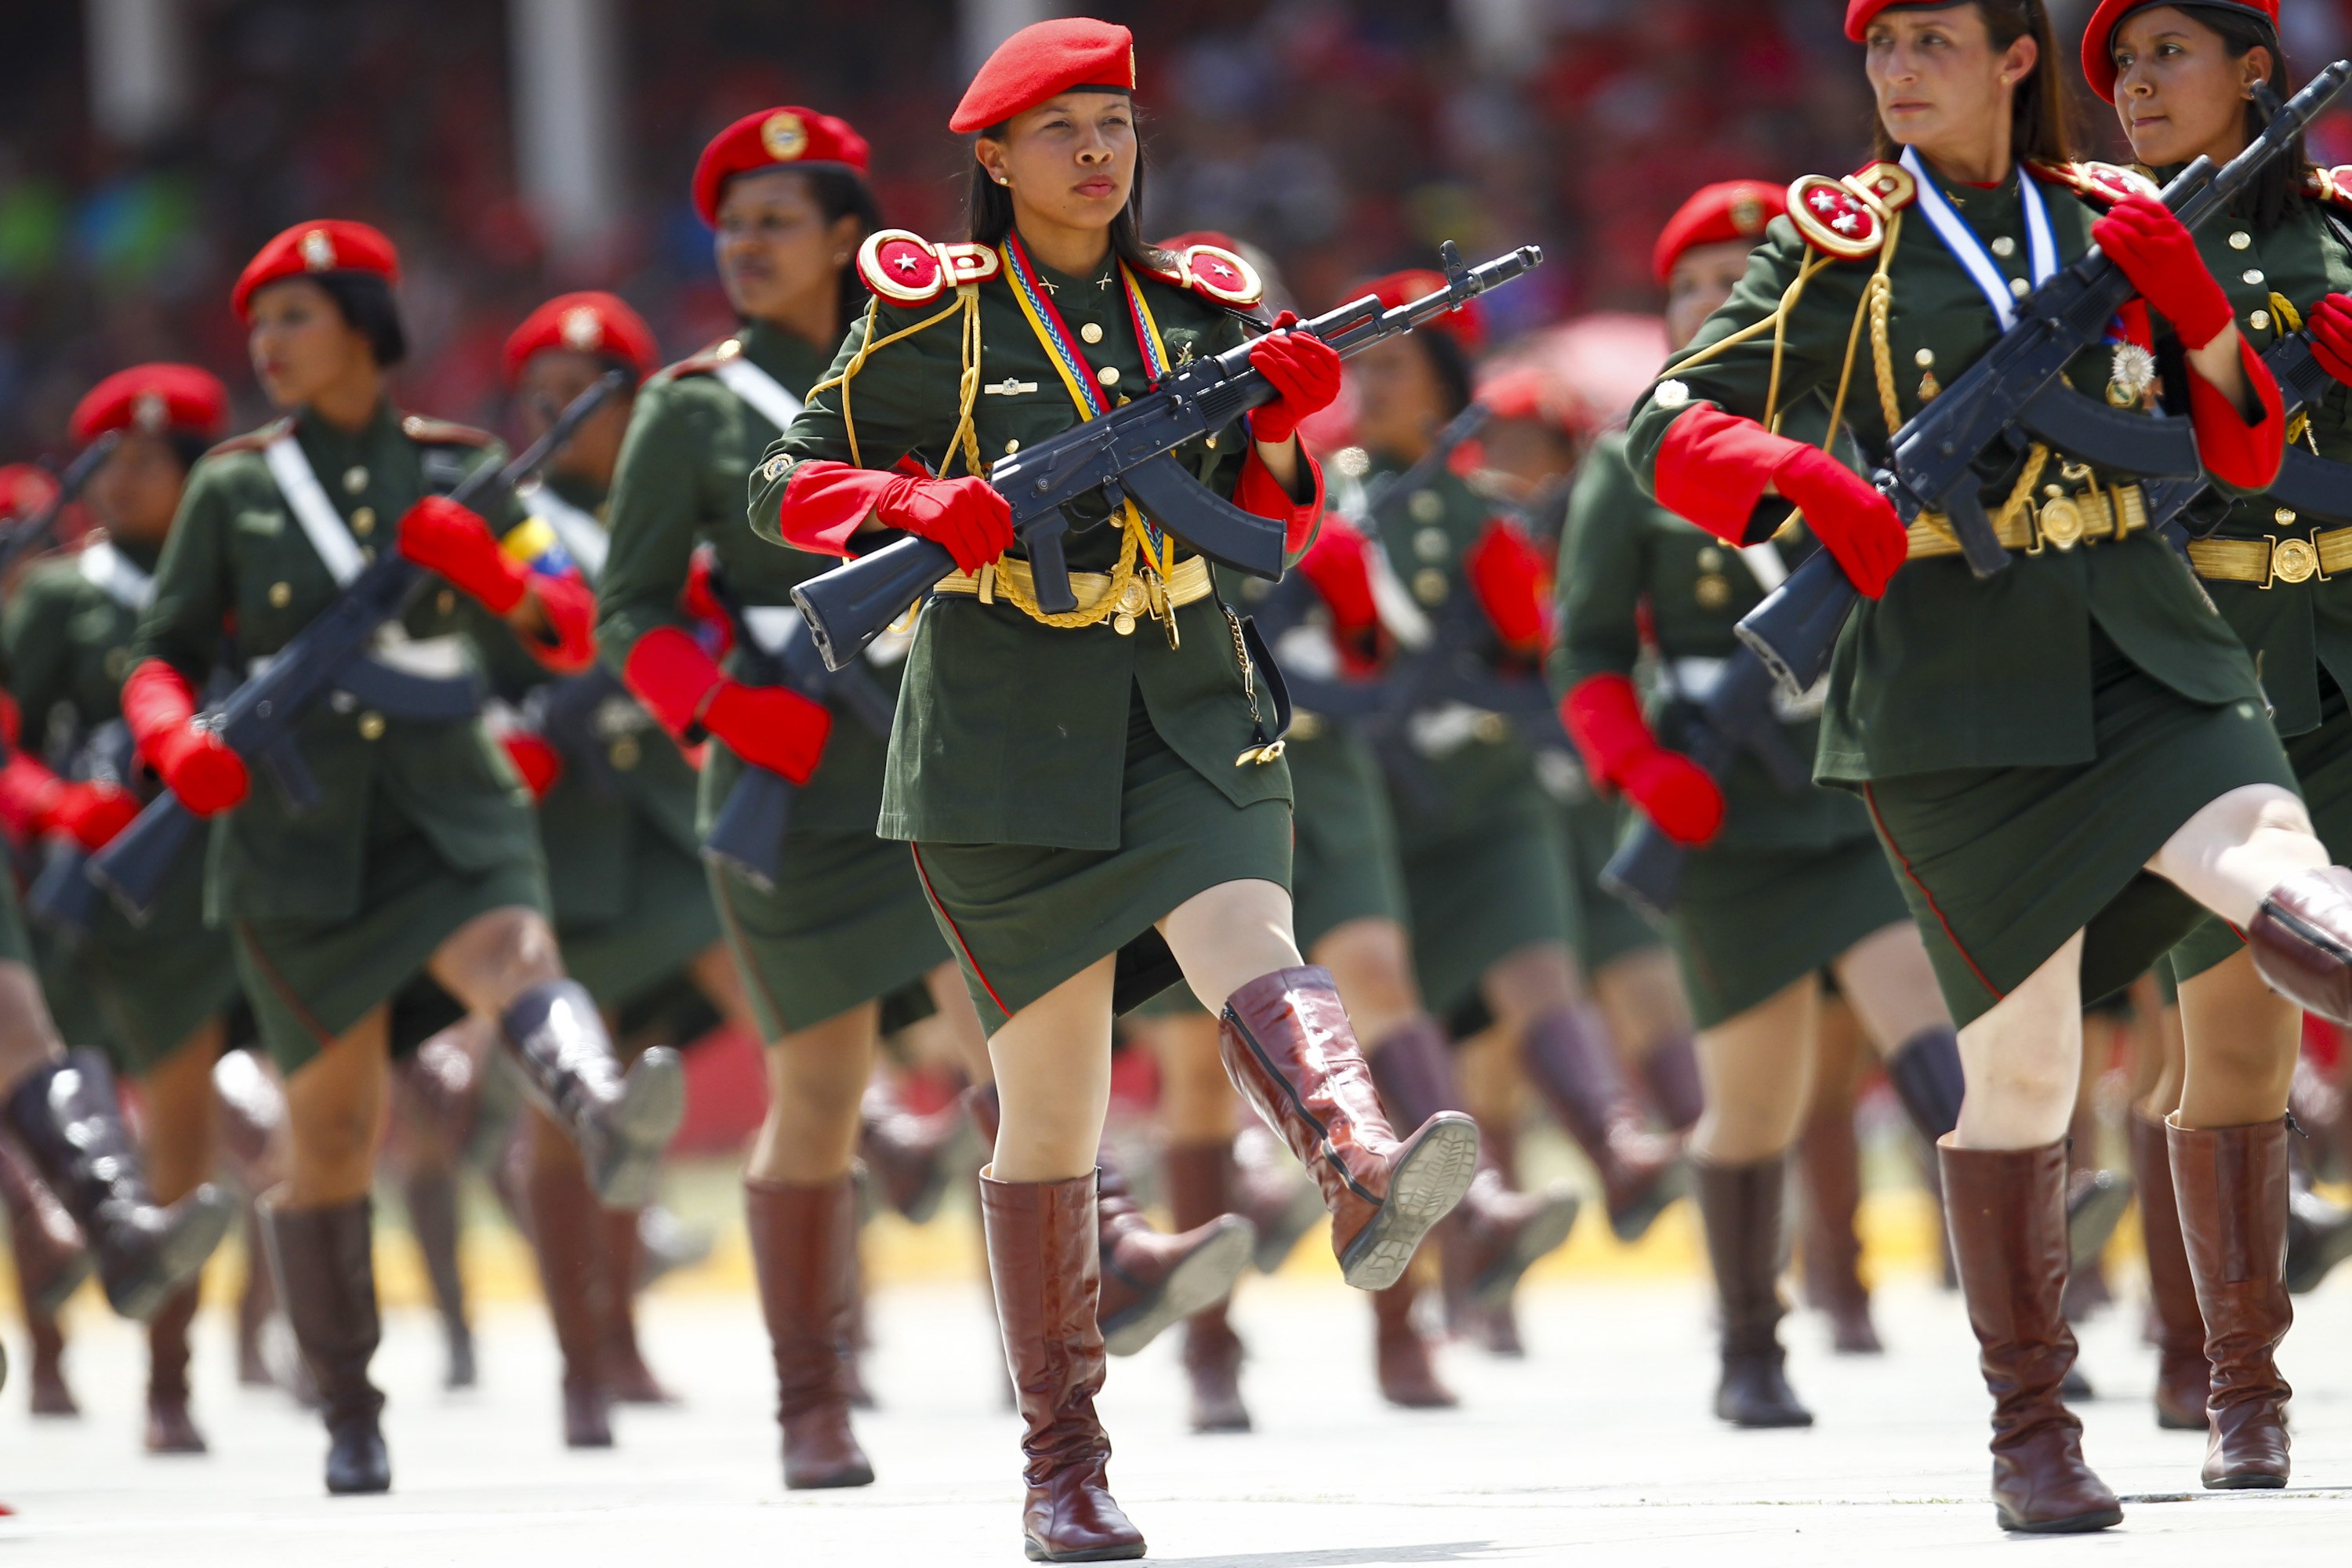 Красная парадная форма. Военная форма. Женщины на параде. Солдаты на параде. Войска на параде.